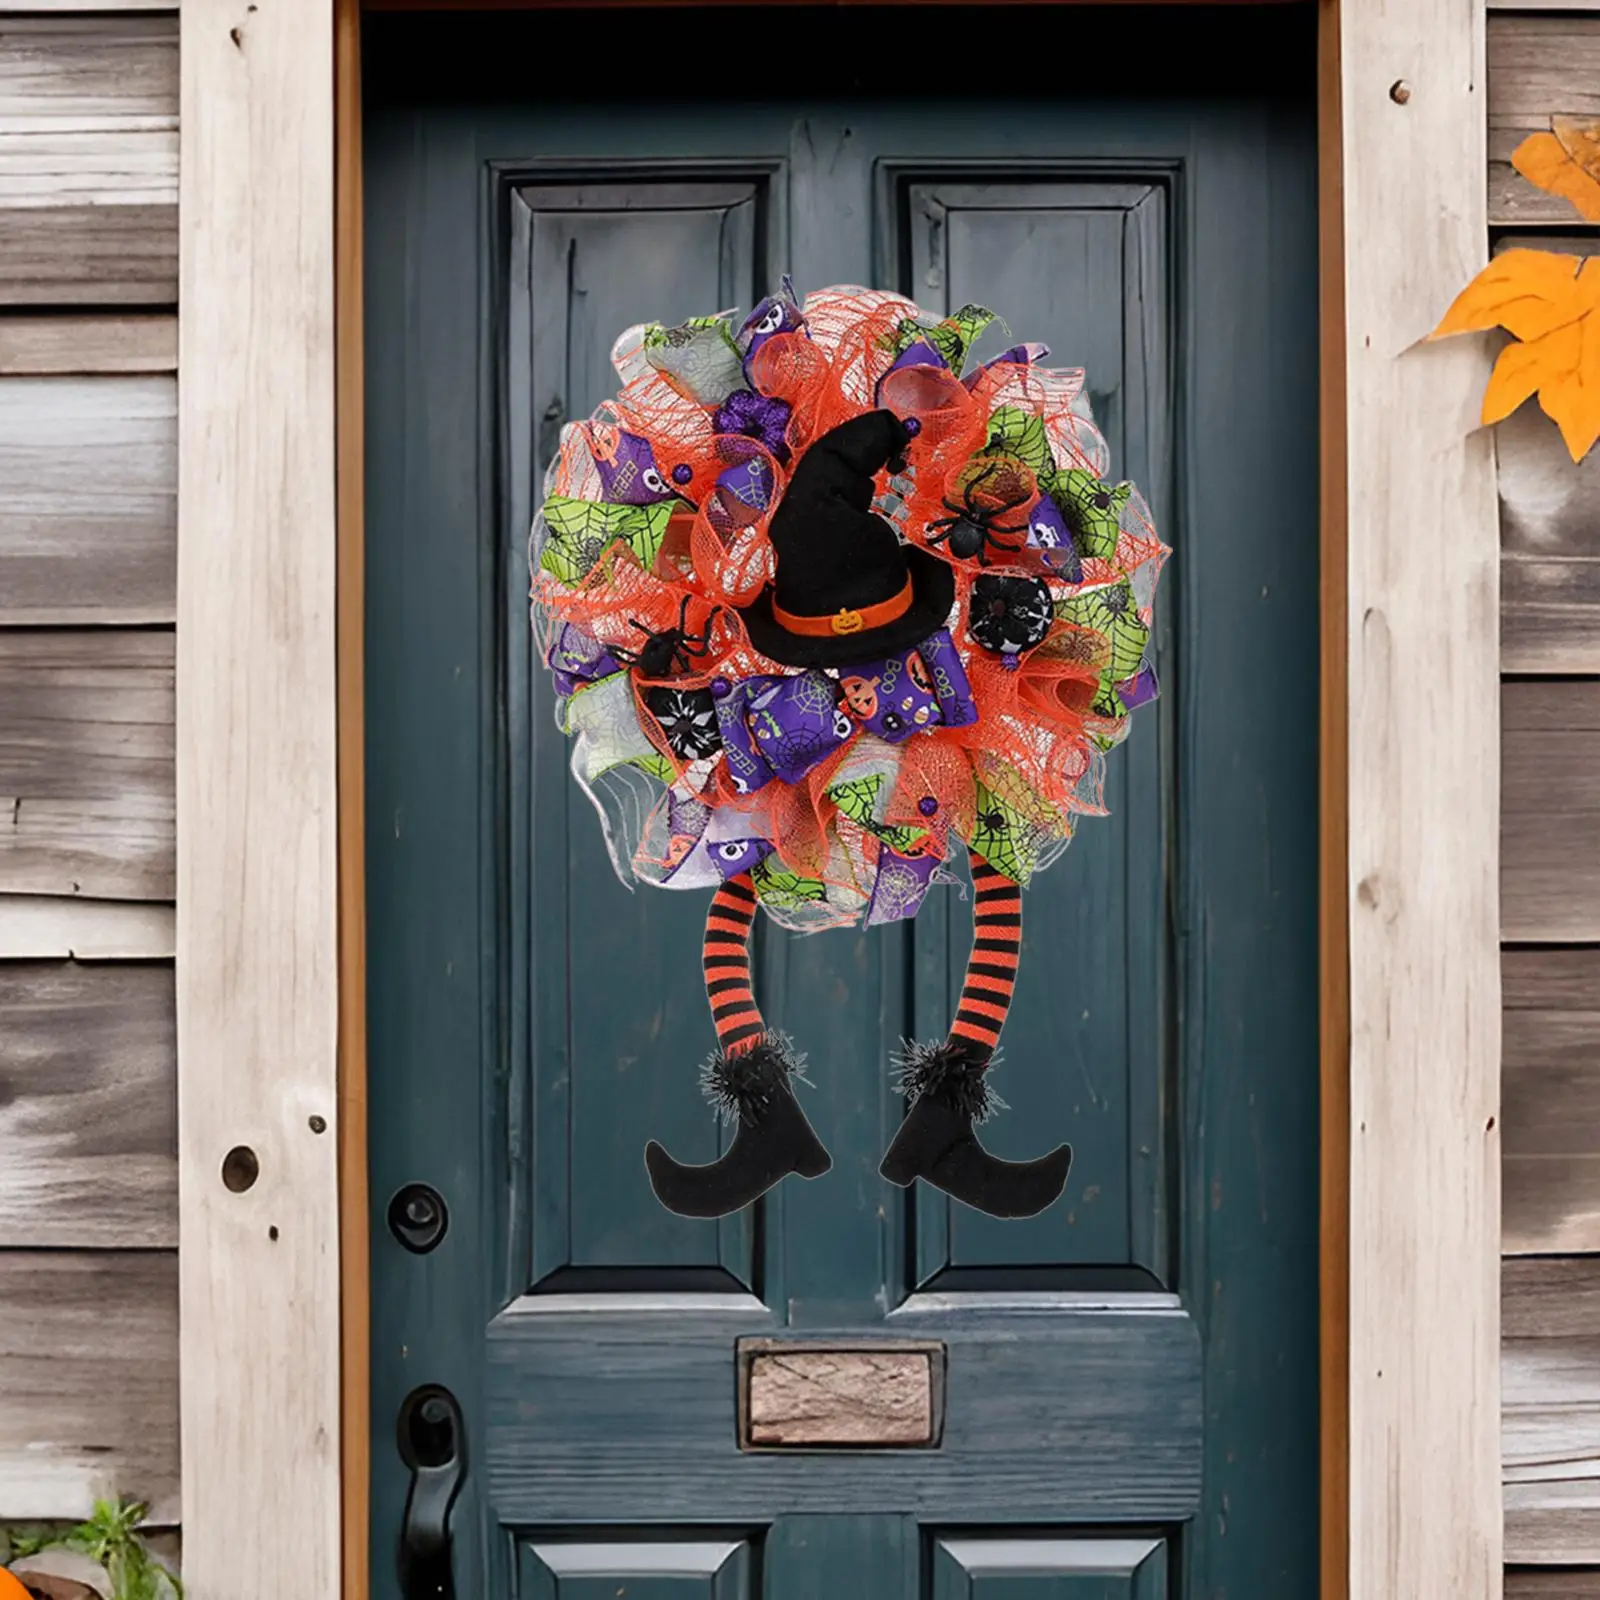 Halloween Wreath for Front Door 23.62inchx15.75inch Handmade Two Long Legs Garland for Indoor Outdoor Home Window